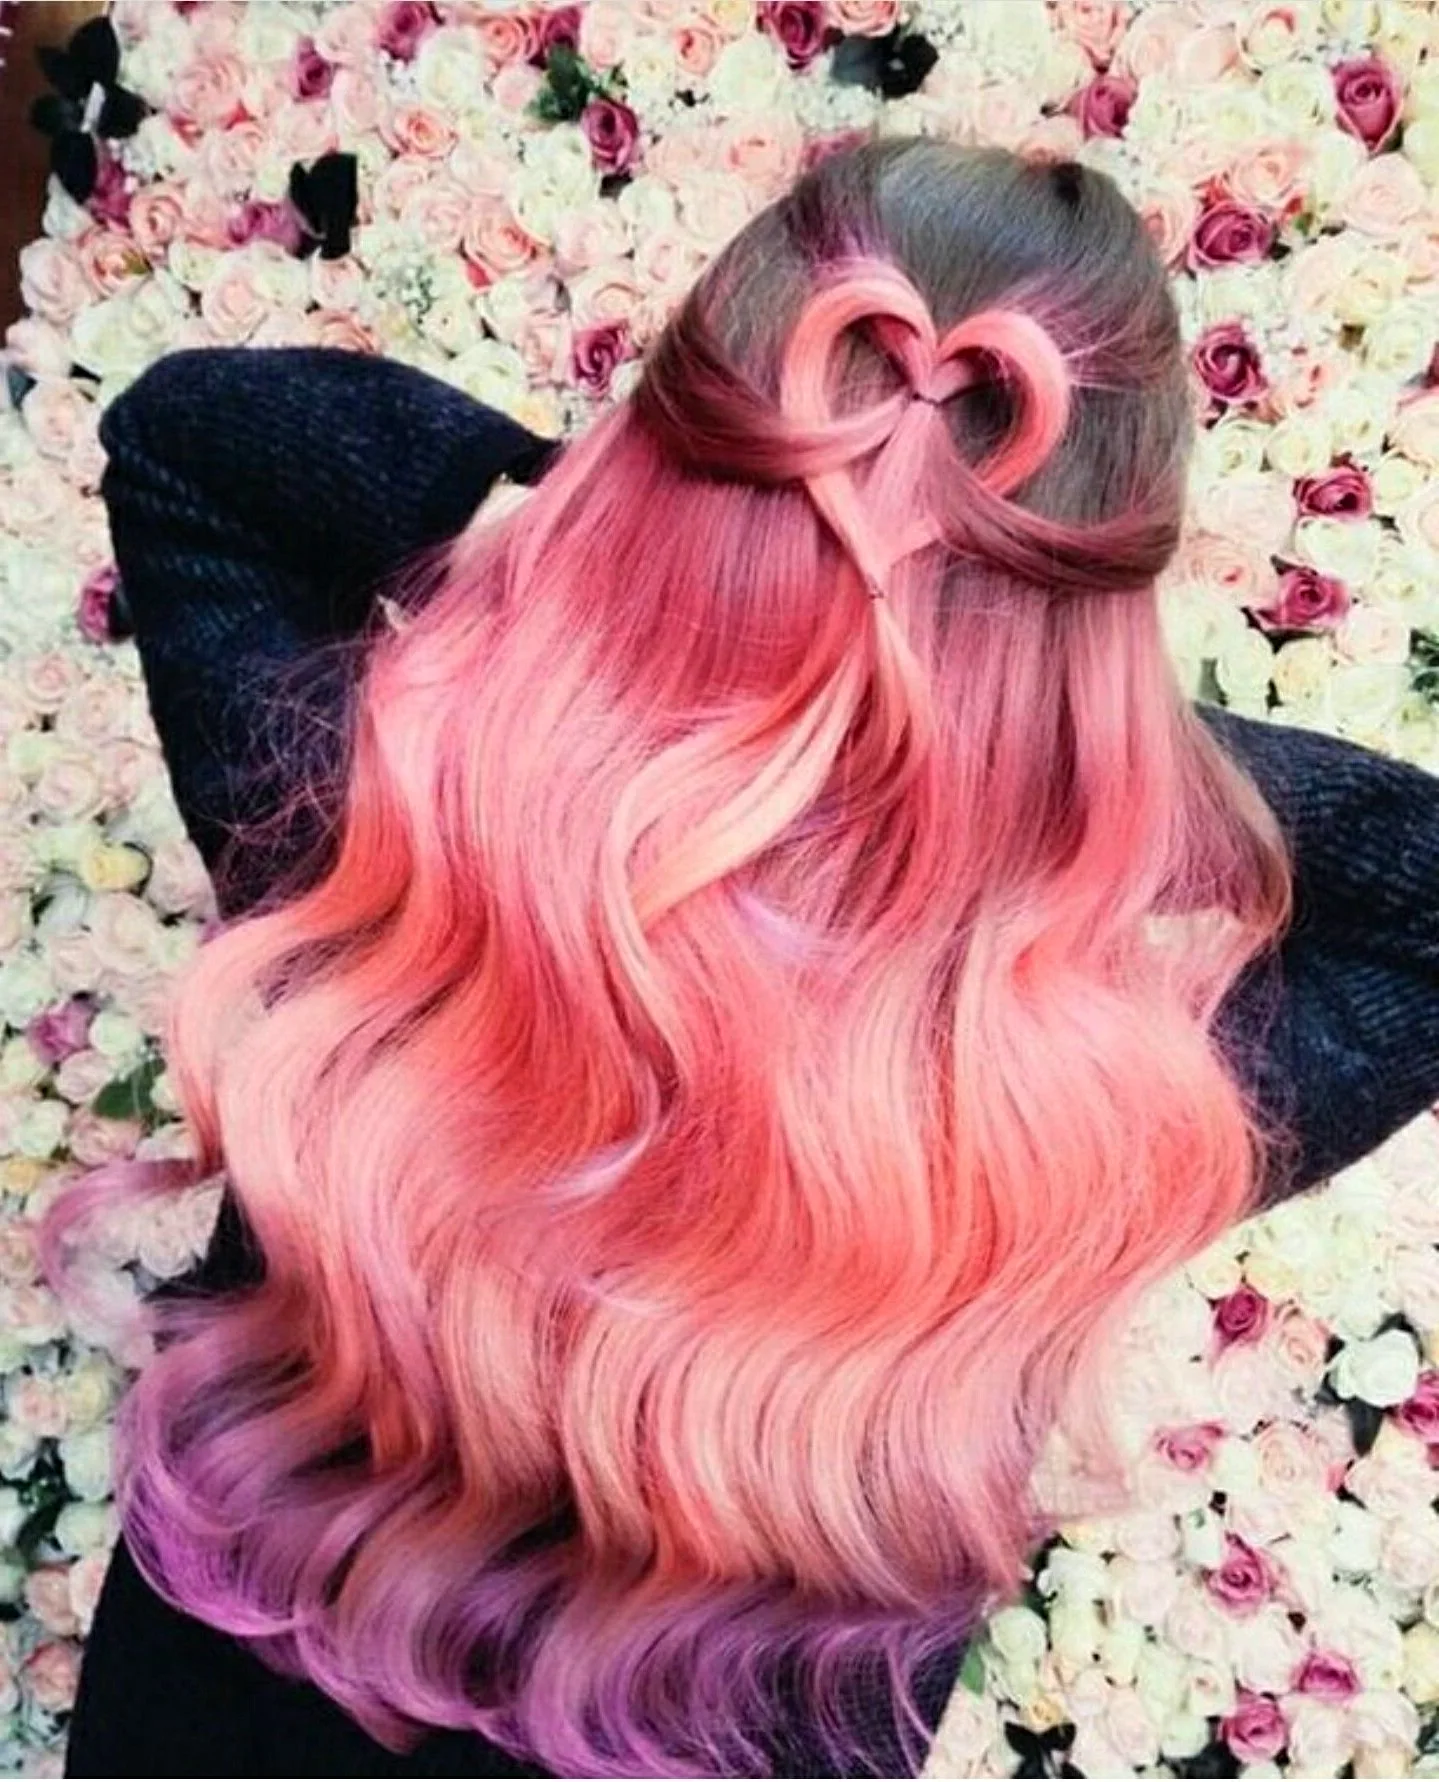 Картинки розовых девушек. Розовый цвет волос. Прически с розовыми волосами. Причёски на длинные розовыеволосы. Красивые причёски розовые волосы.